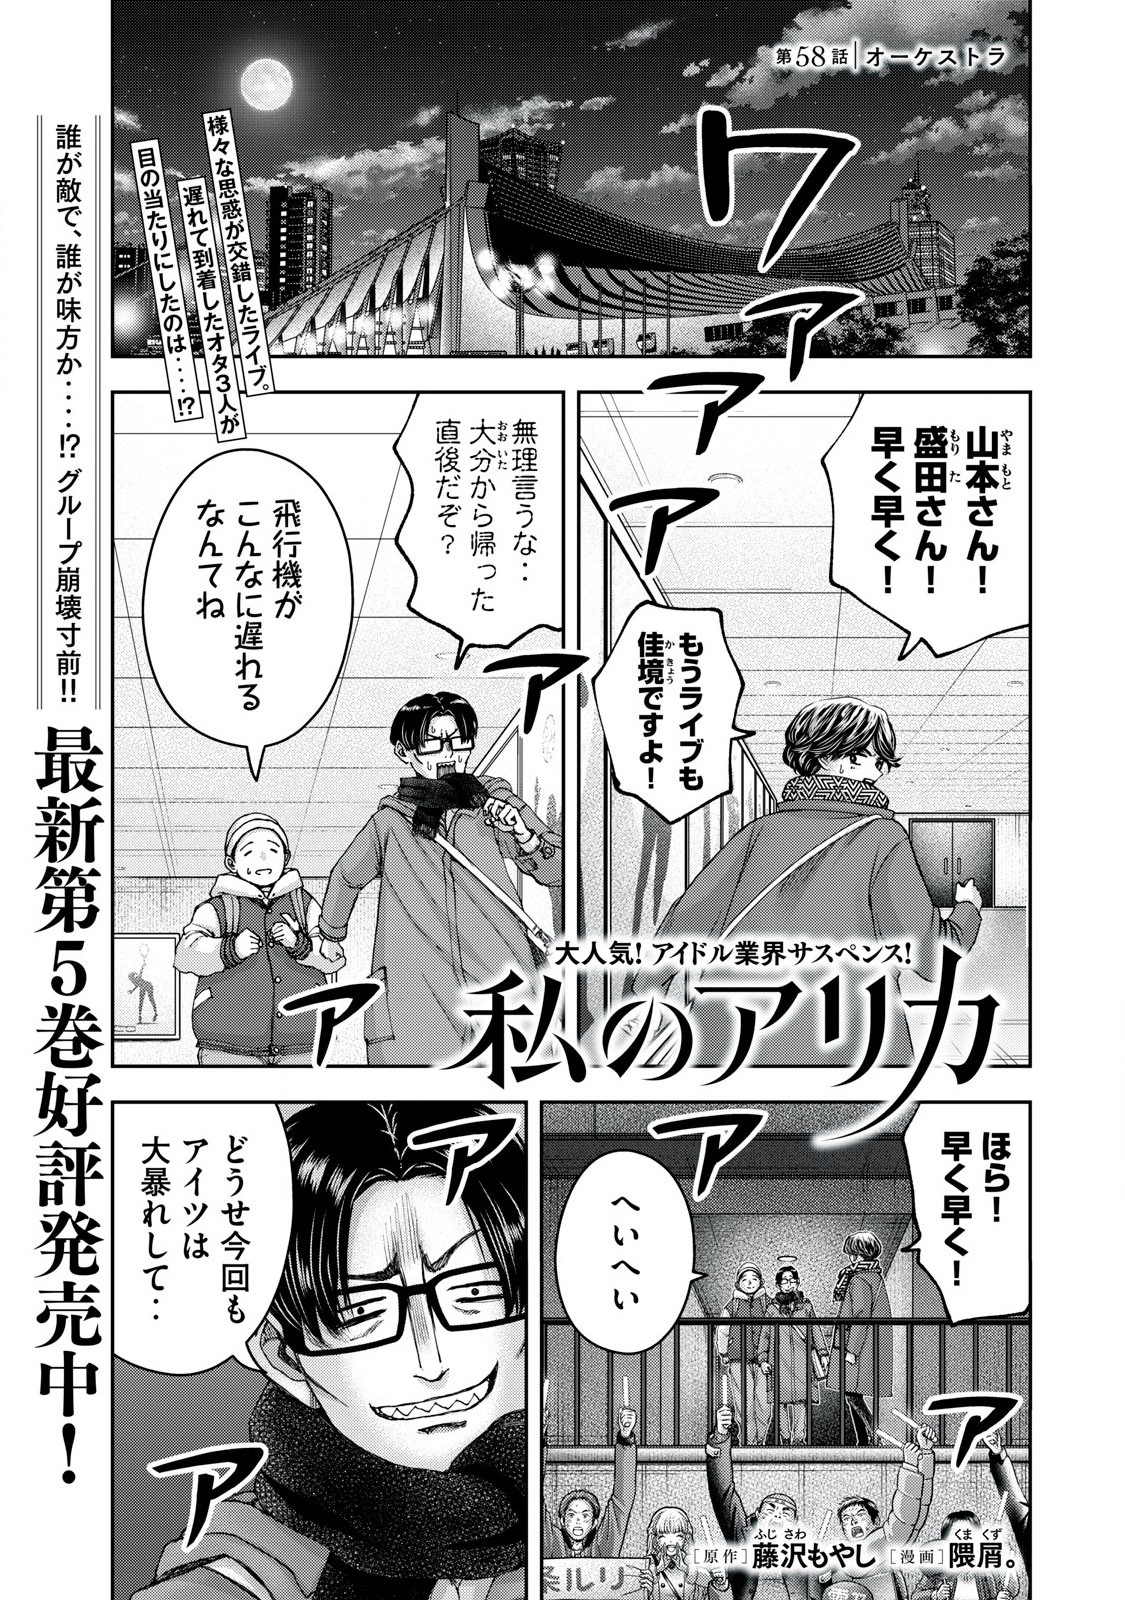 Watashi no Arika - Chapter 58 - Page 1